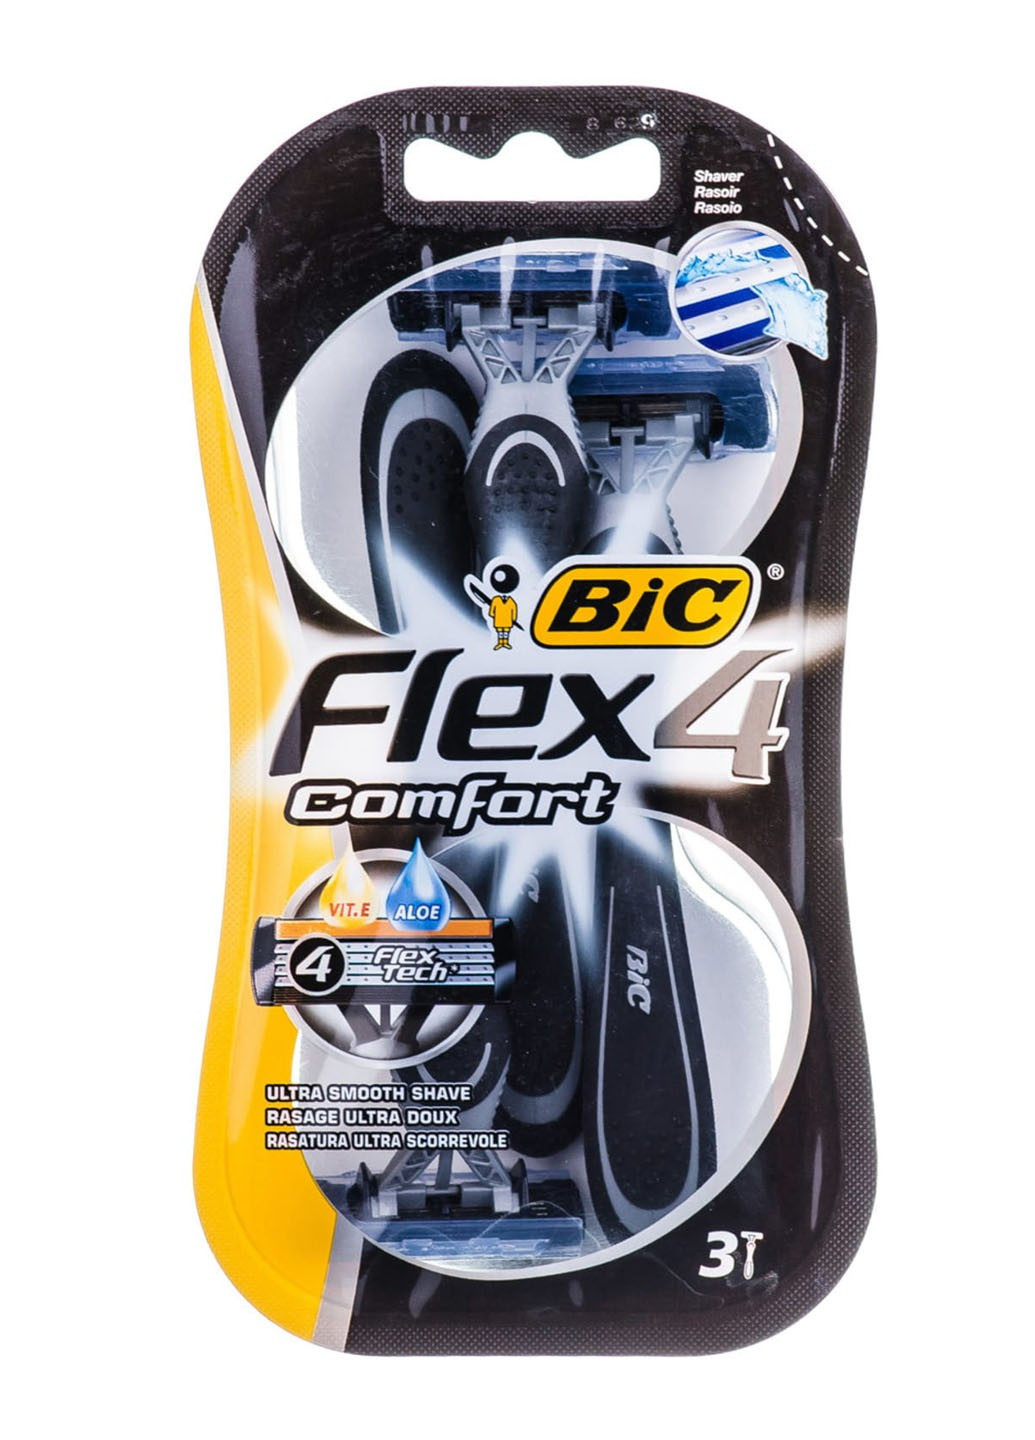 Набор бритв Flex 4 комфорт без сменных картриджей (3 шт) Bic (264668454)